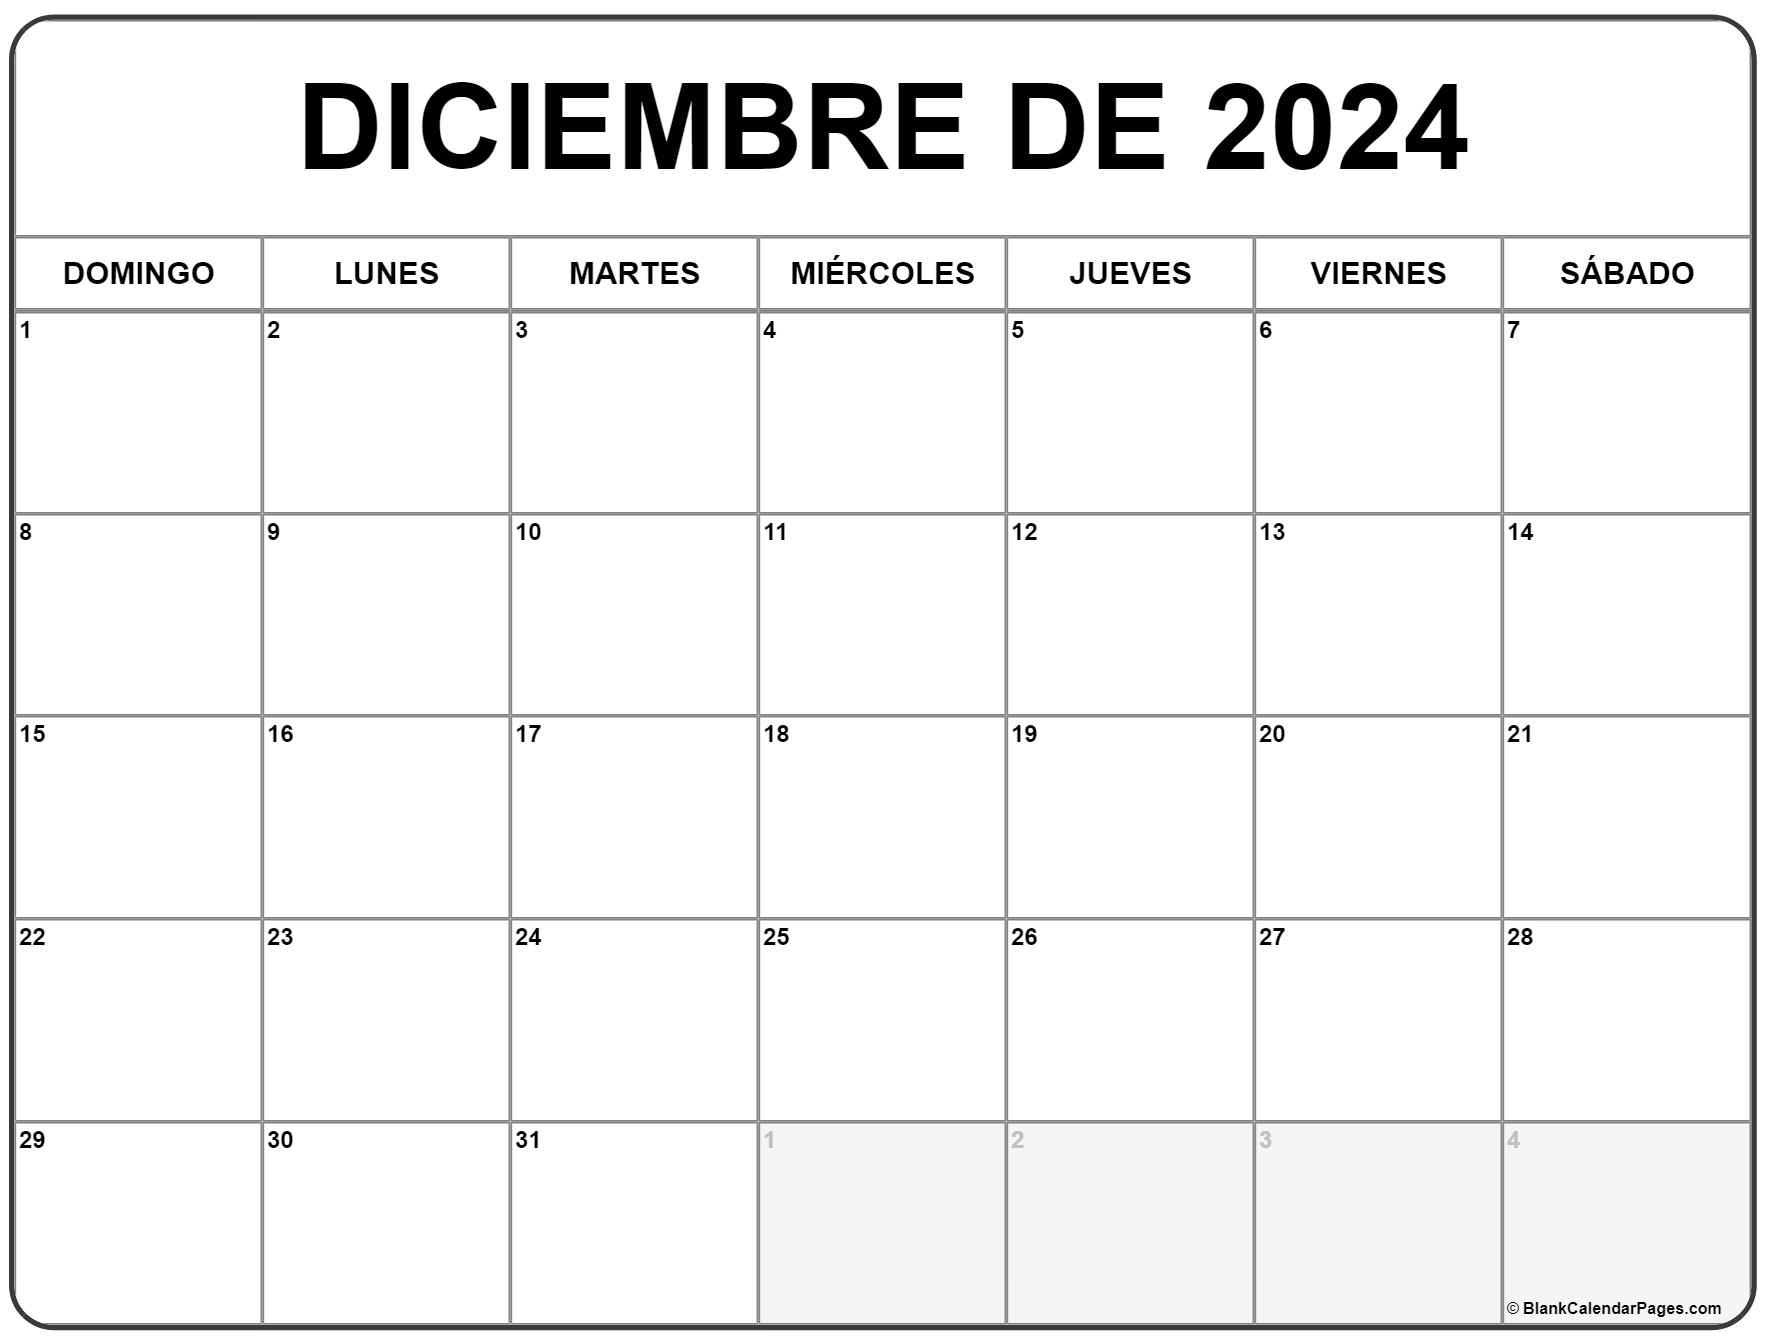 calendario diciembre 2022 para imprimir